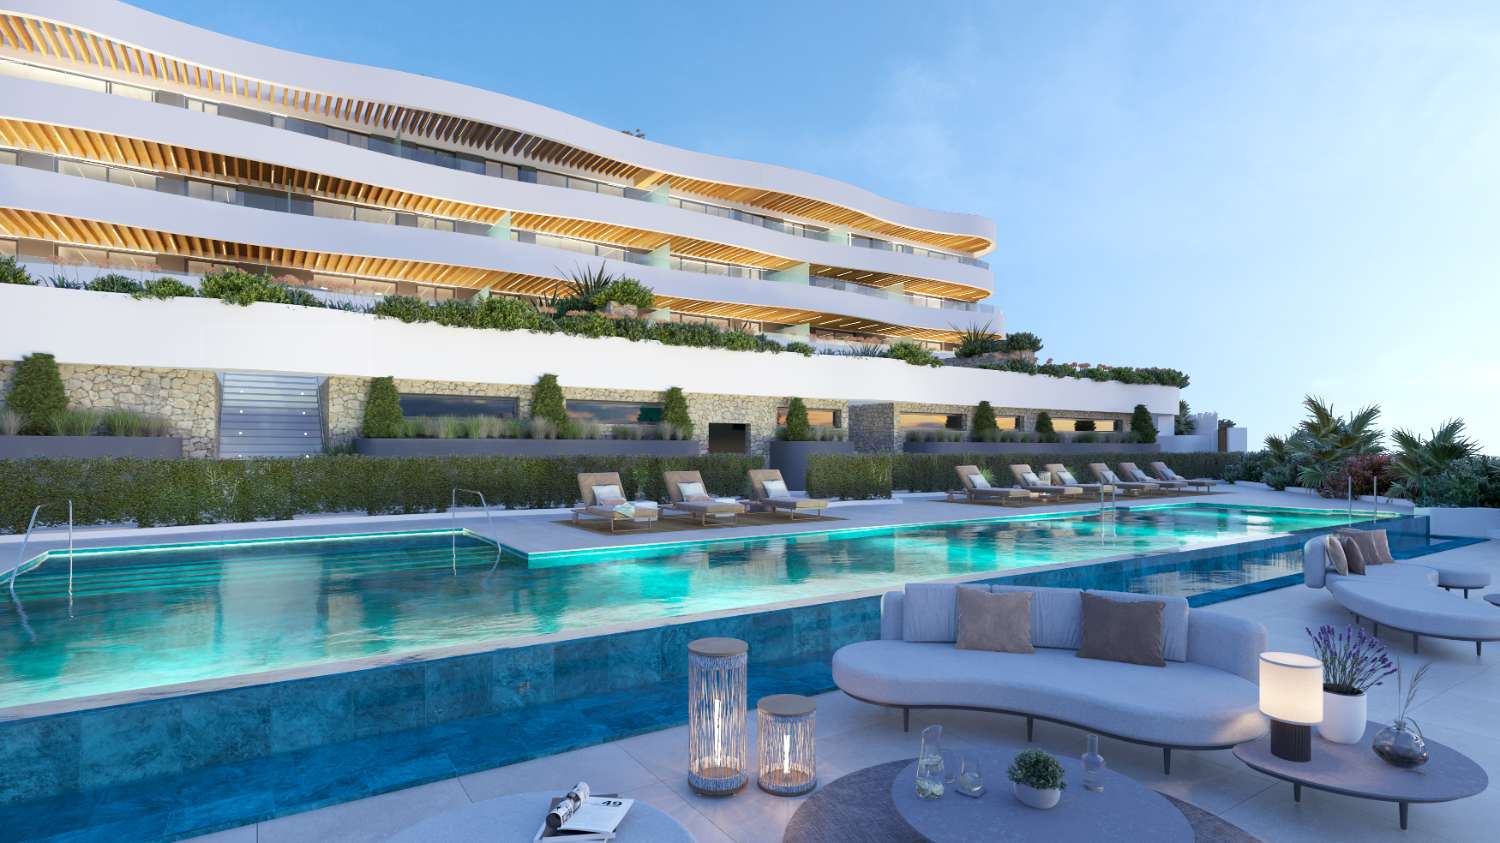 New apartment development in Mijas Costa - Costa del Sol